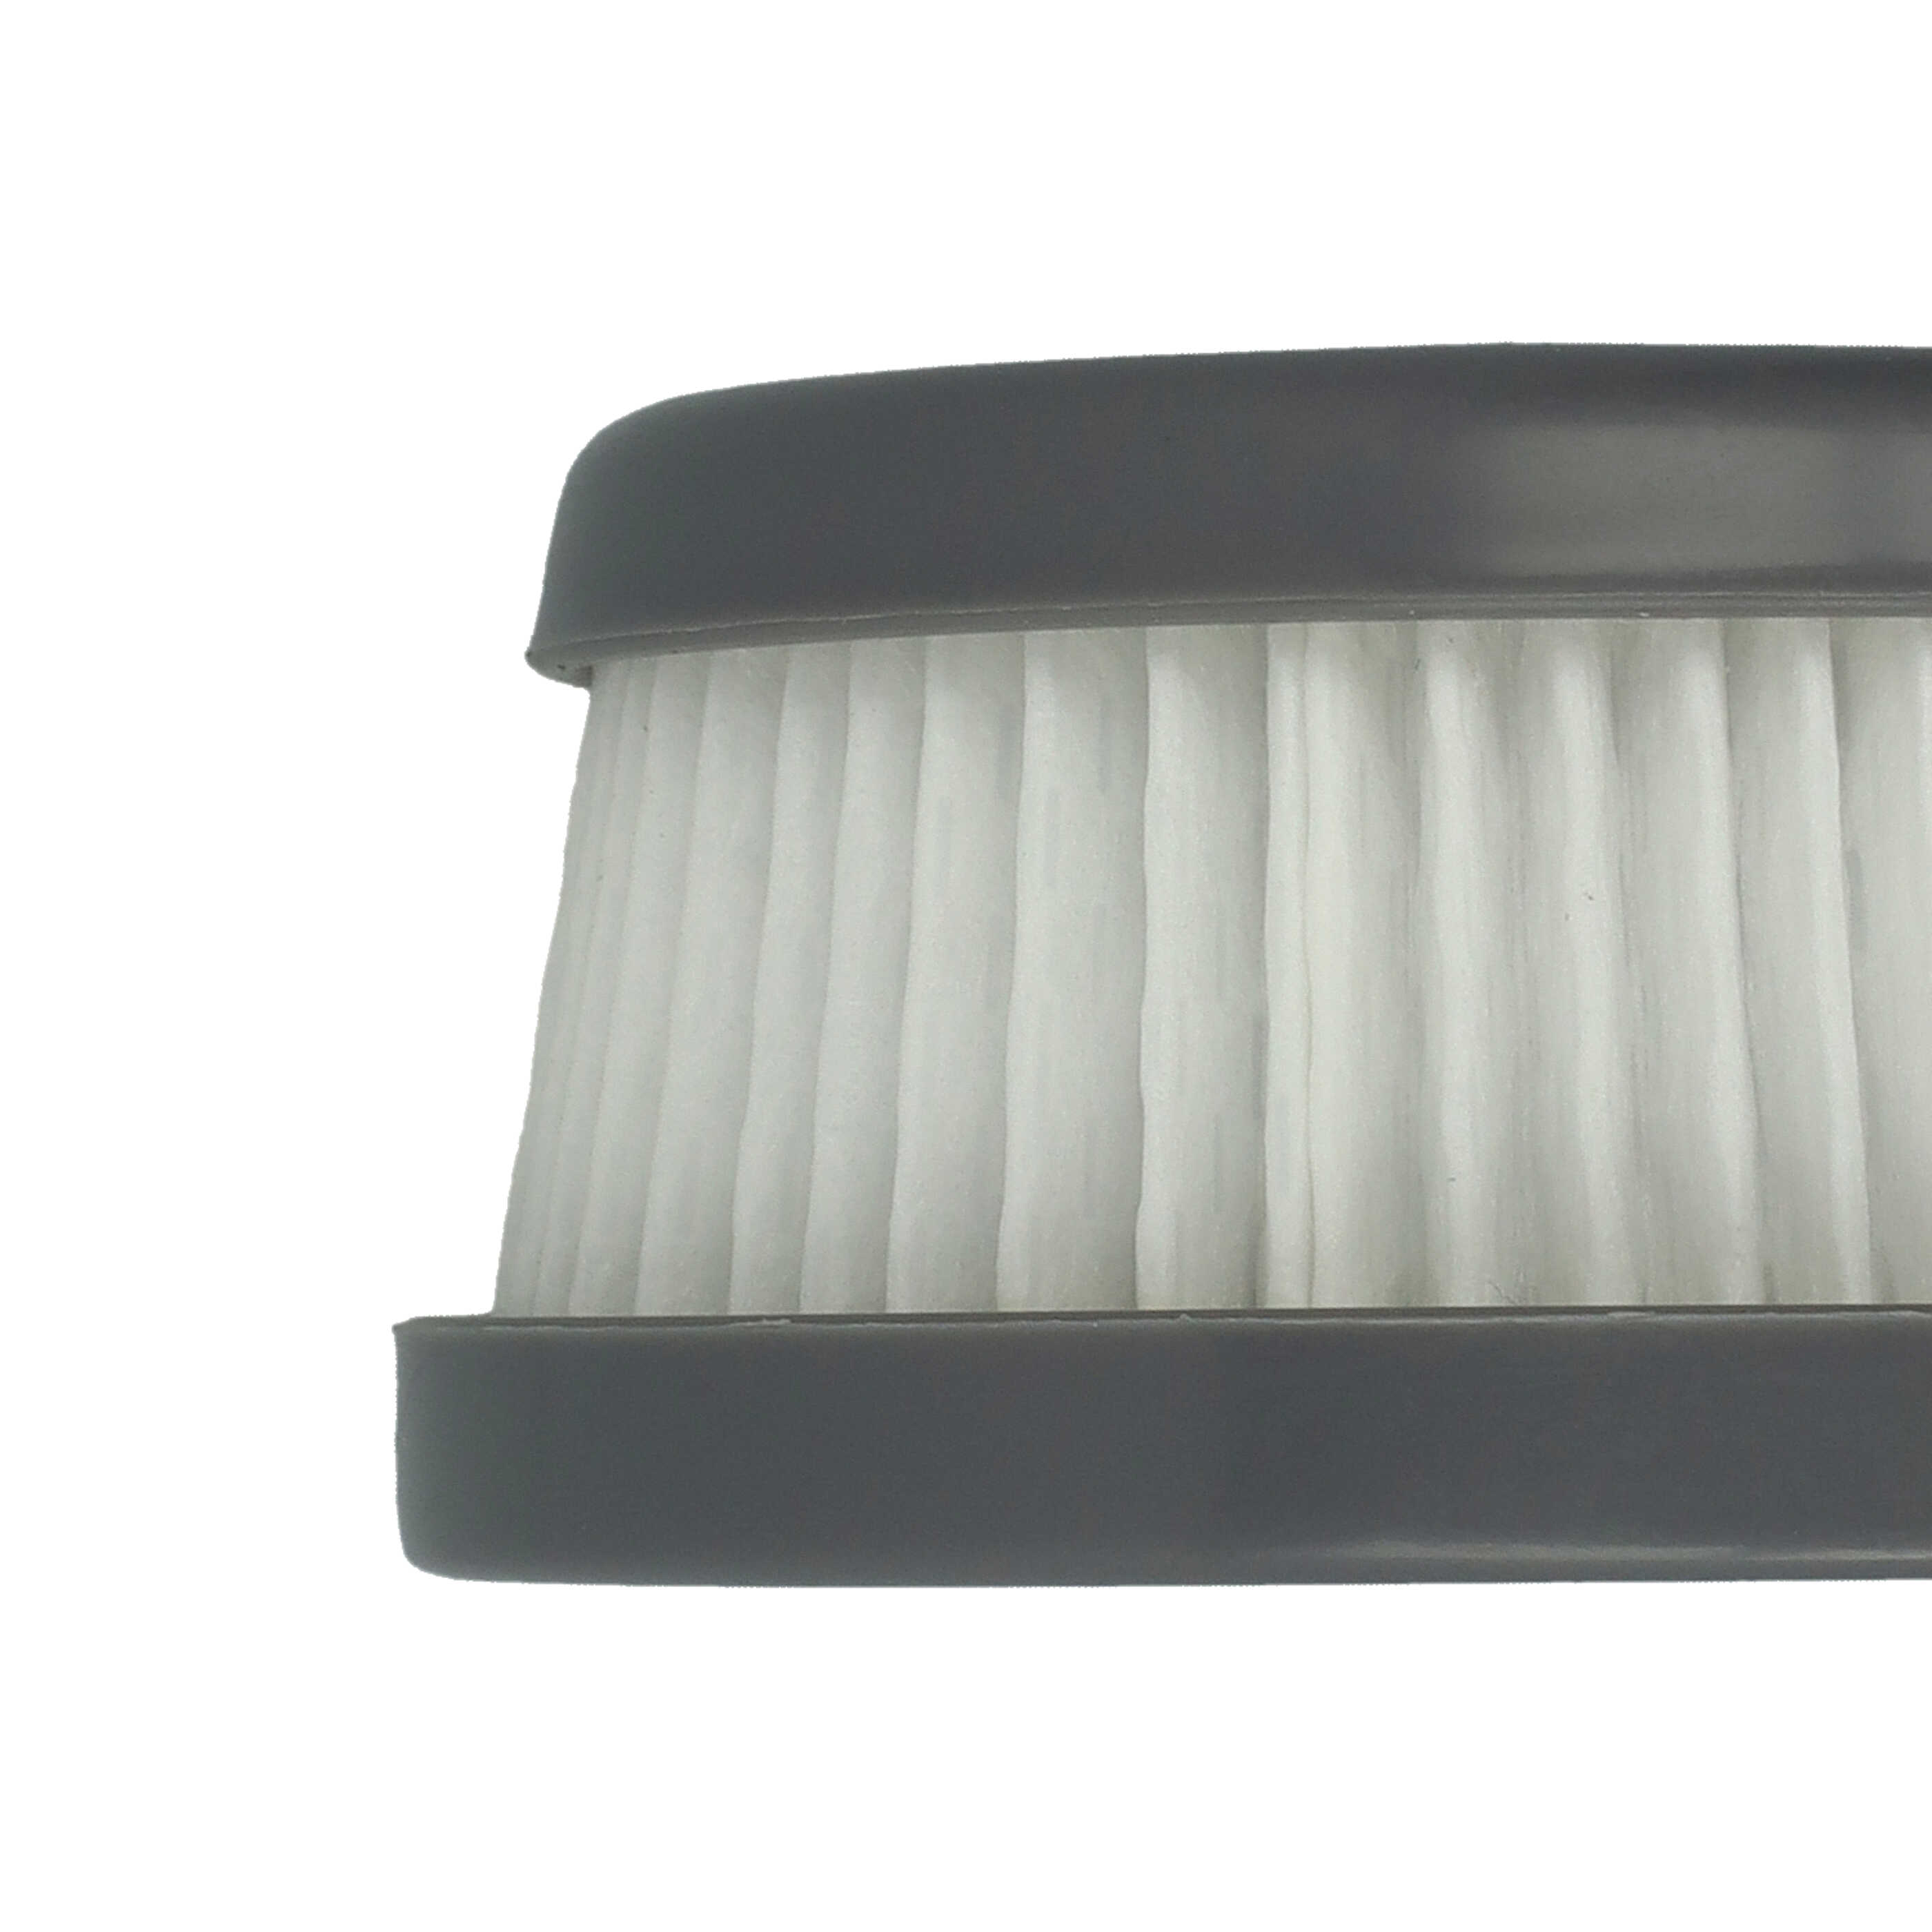 Filtro reemplaza Black & Decker VFORB10 para aspiradora filtro, blanco / gris